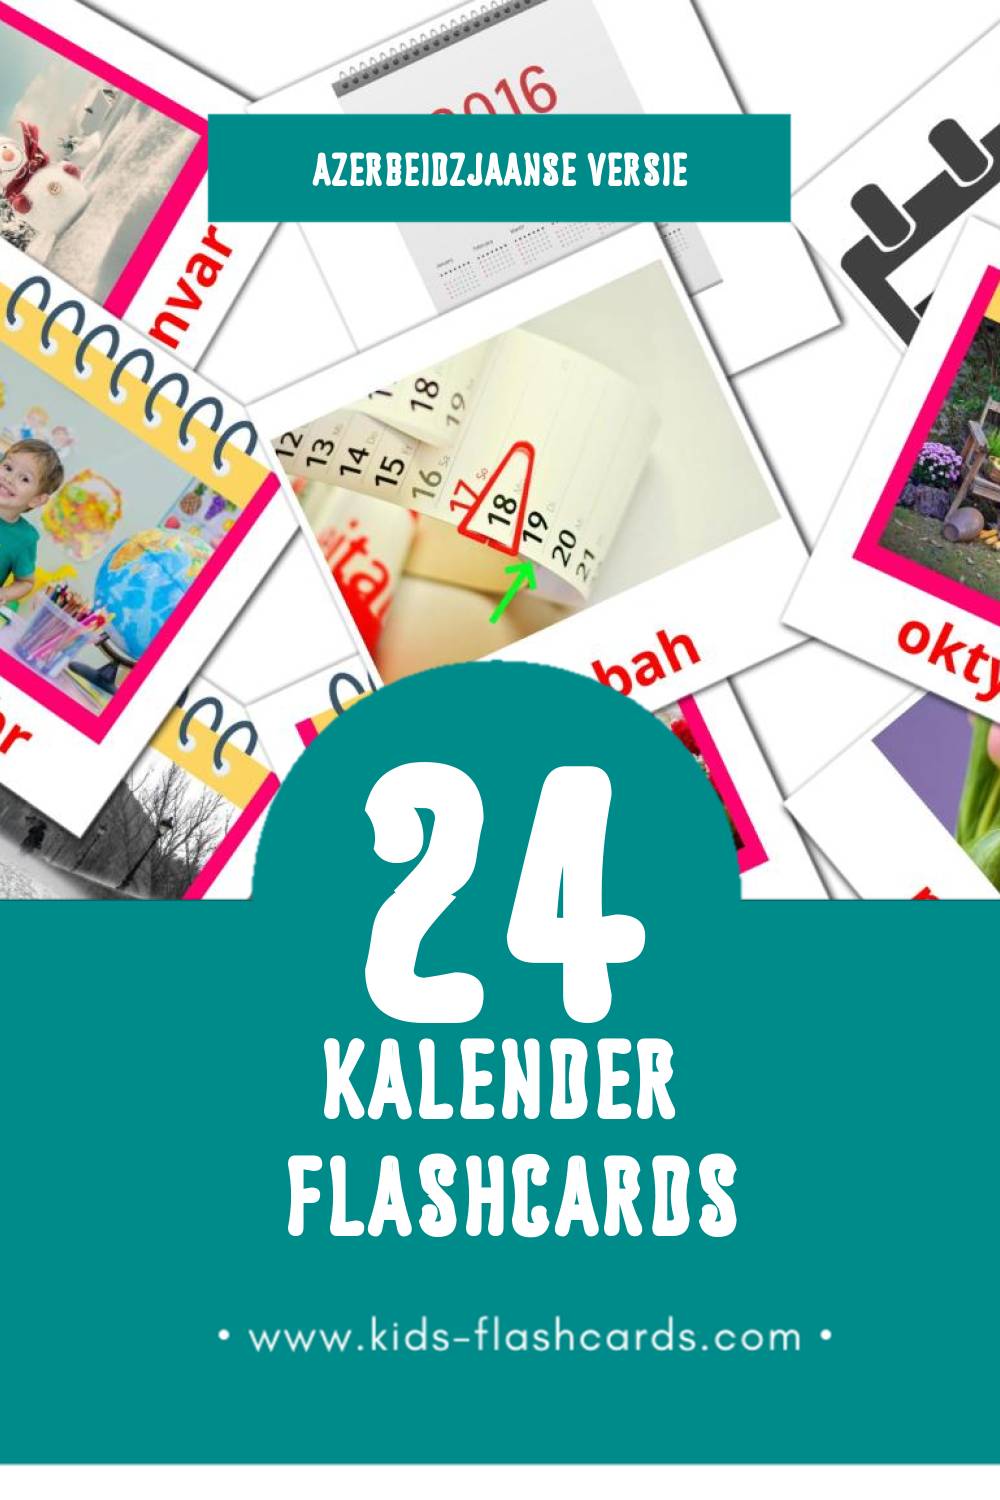 Visuele Təqvim Flashcards voor Kleuters (24 kaarten in het Azerbeidzjaans)